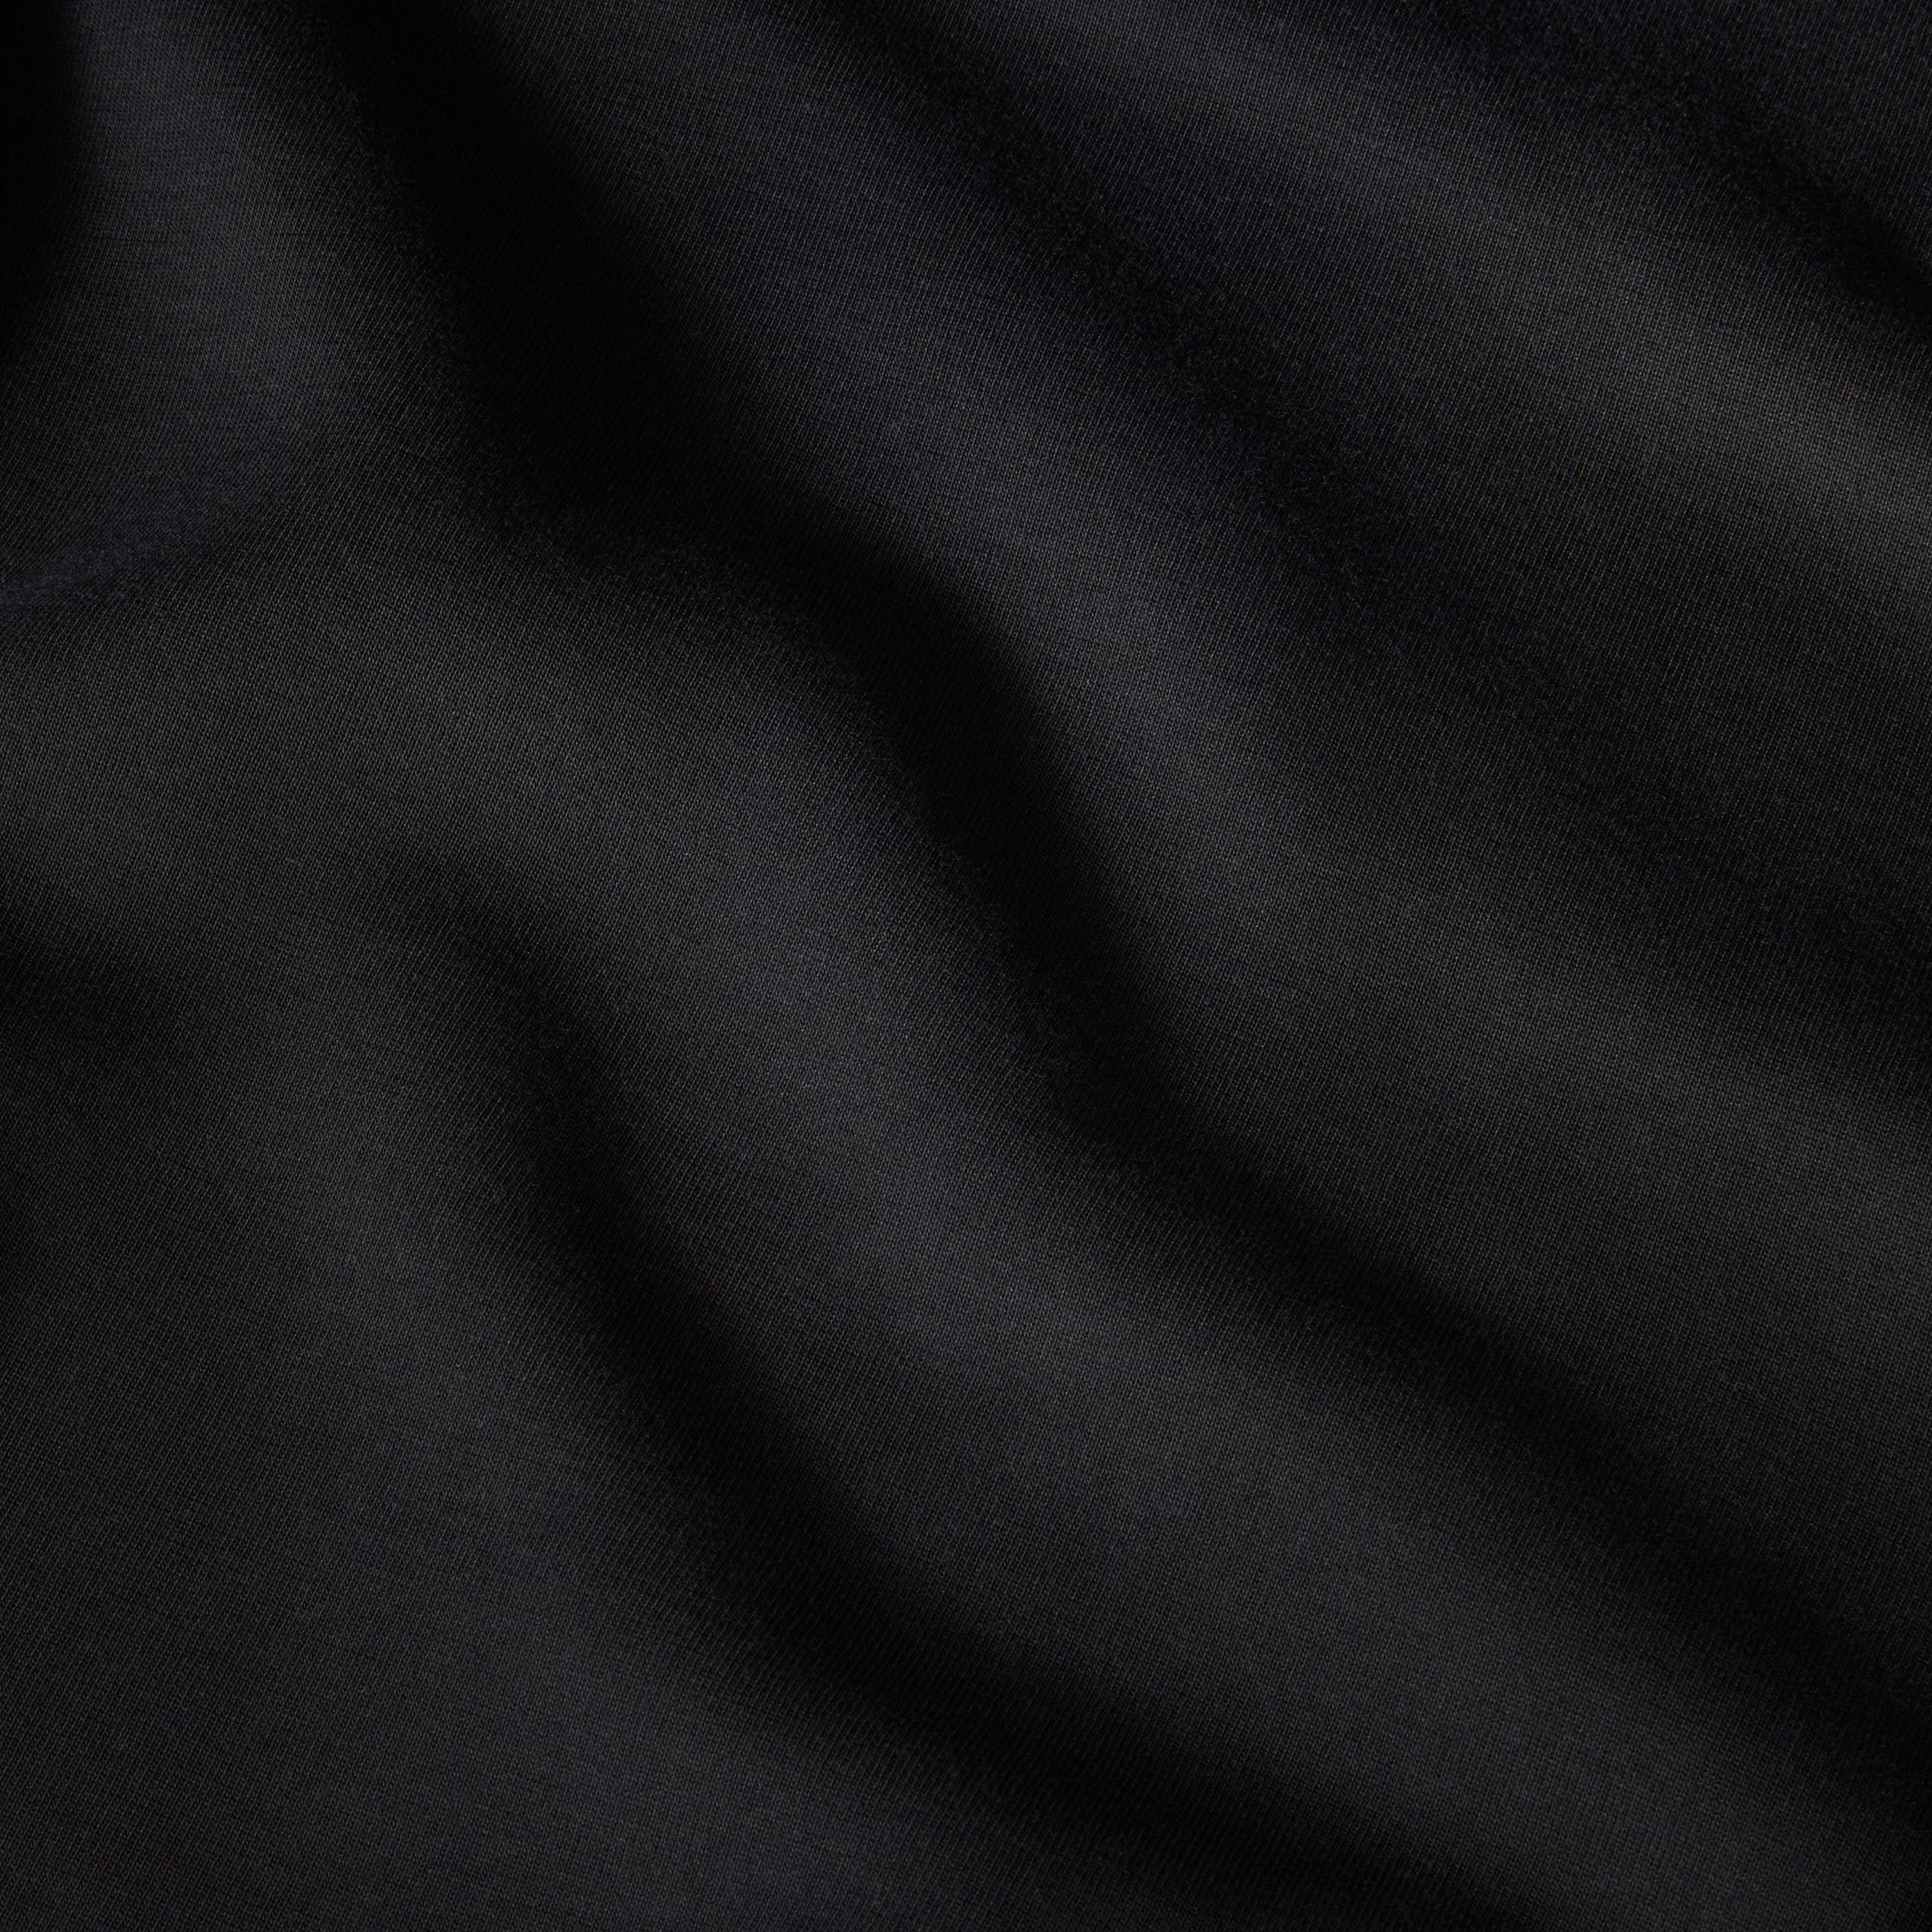 Nike Sportswear Tech Fleece Kadın Siyah Eşofman Altı